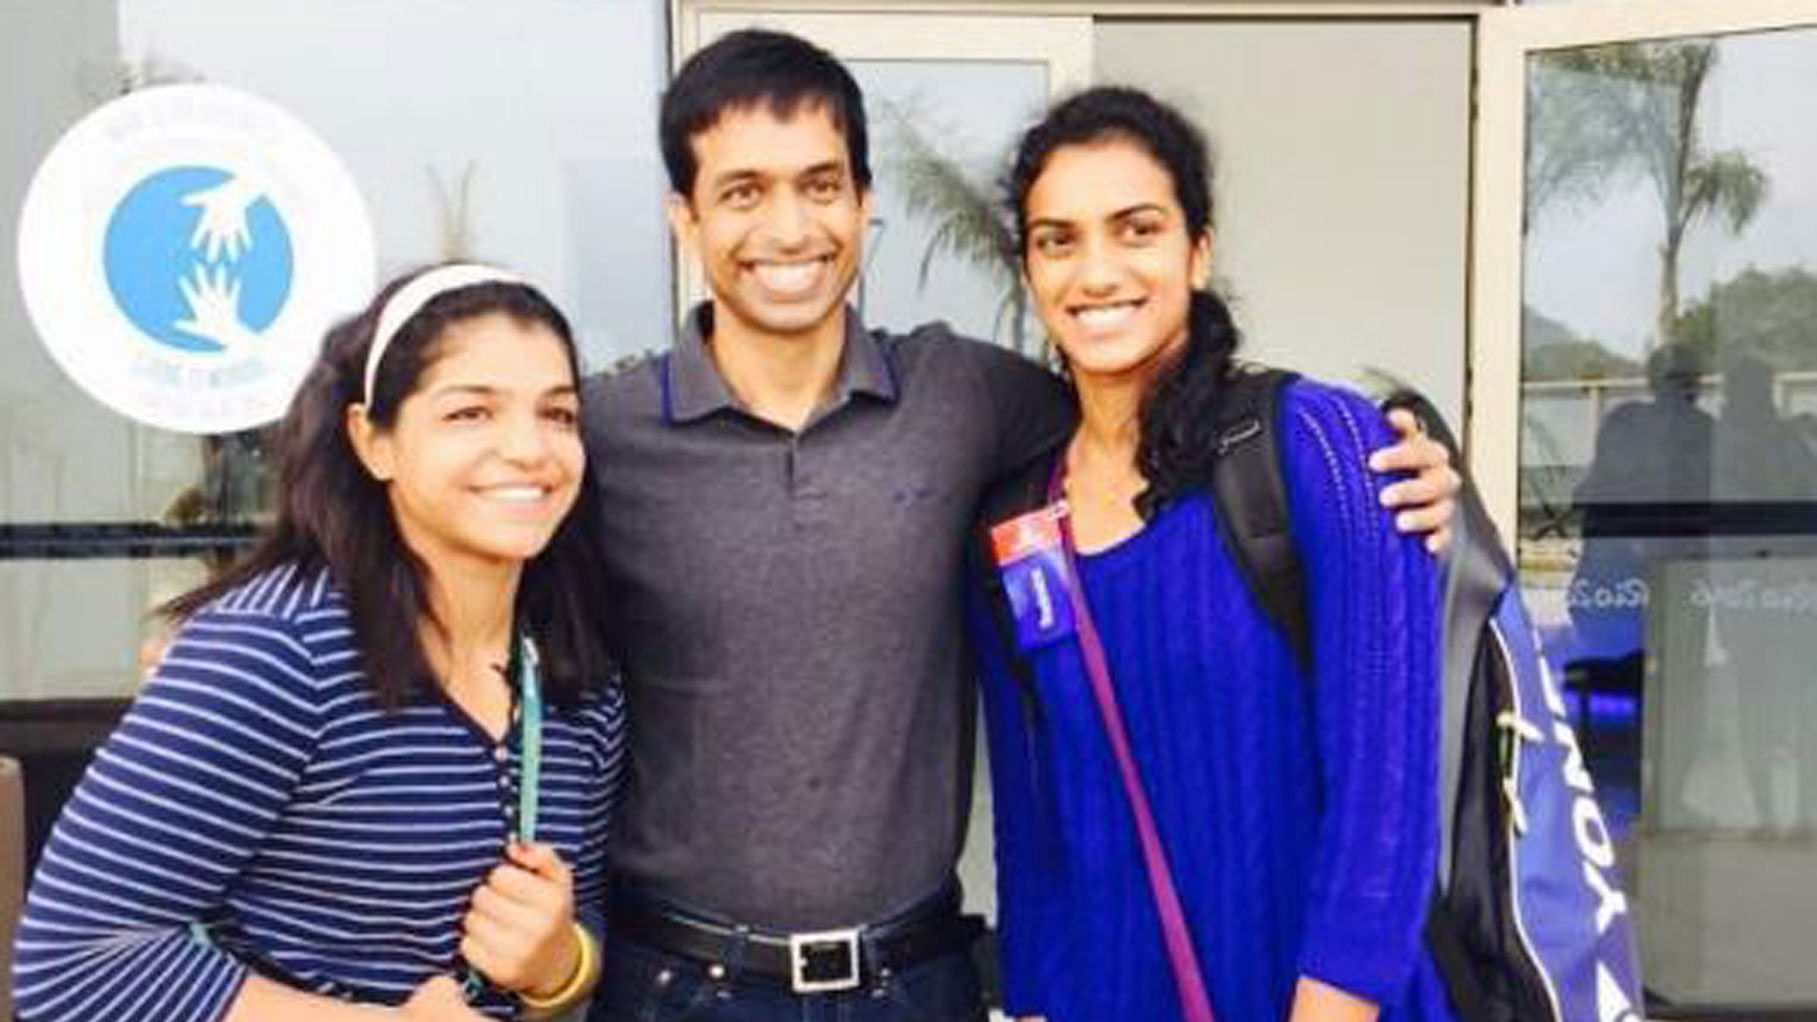 Sakshi Malik, Pullela Gopichand and PV Sindhu at Rio. (Photo Courtesy: Twitter/<a href="https://twitter.com/SakshiMalik/status/767214518028136448">@SakshiMalik</a>)